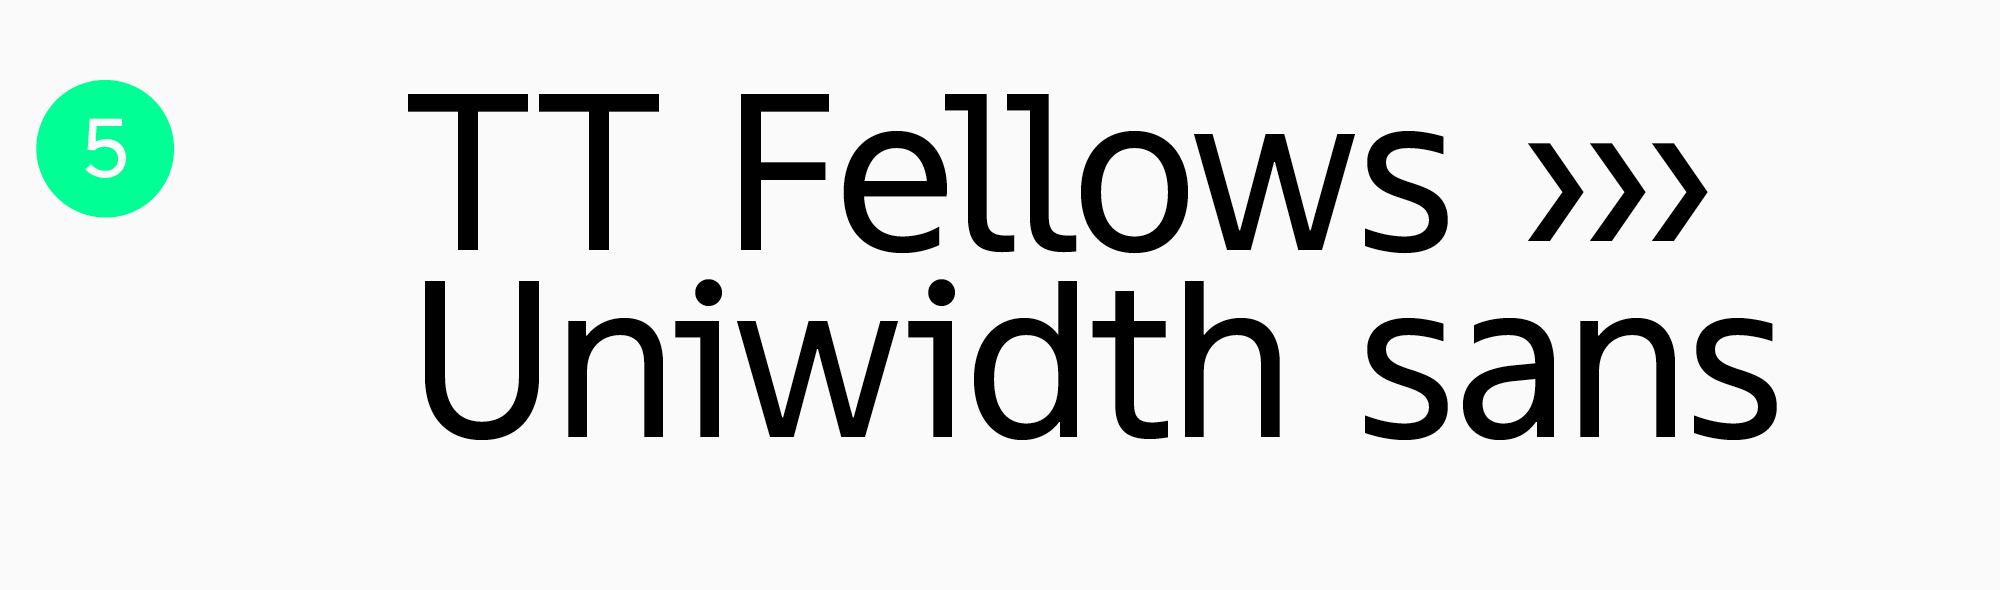 TT Fellows a workhorse font for apps